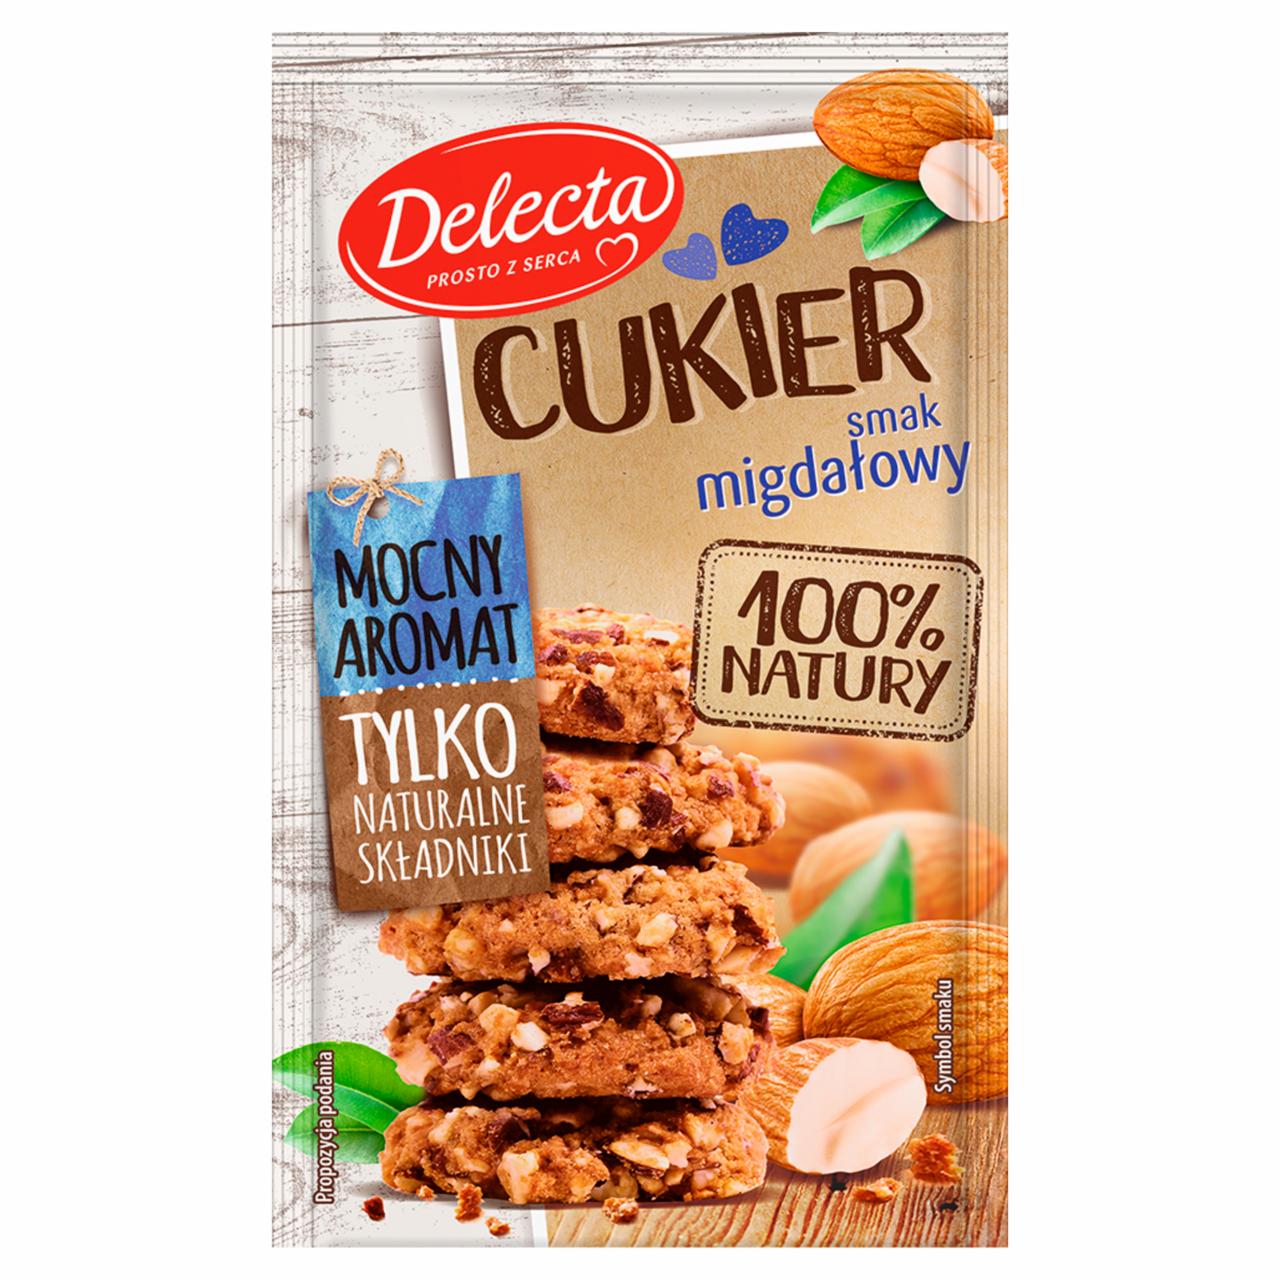 Zdjęcia - Delecta Premium Cukier smak migdałowy 15 g